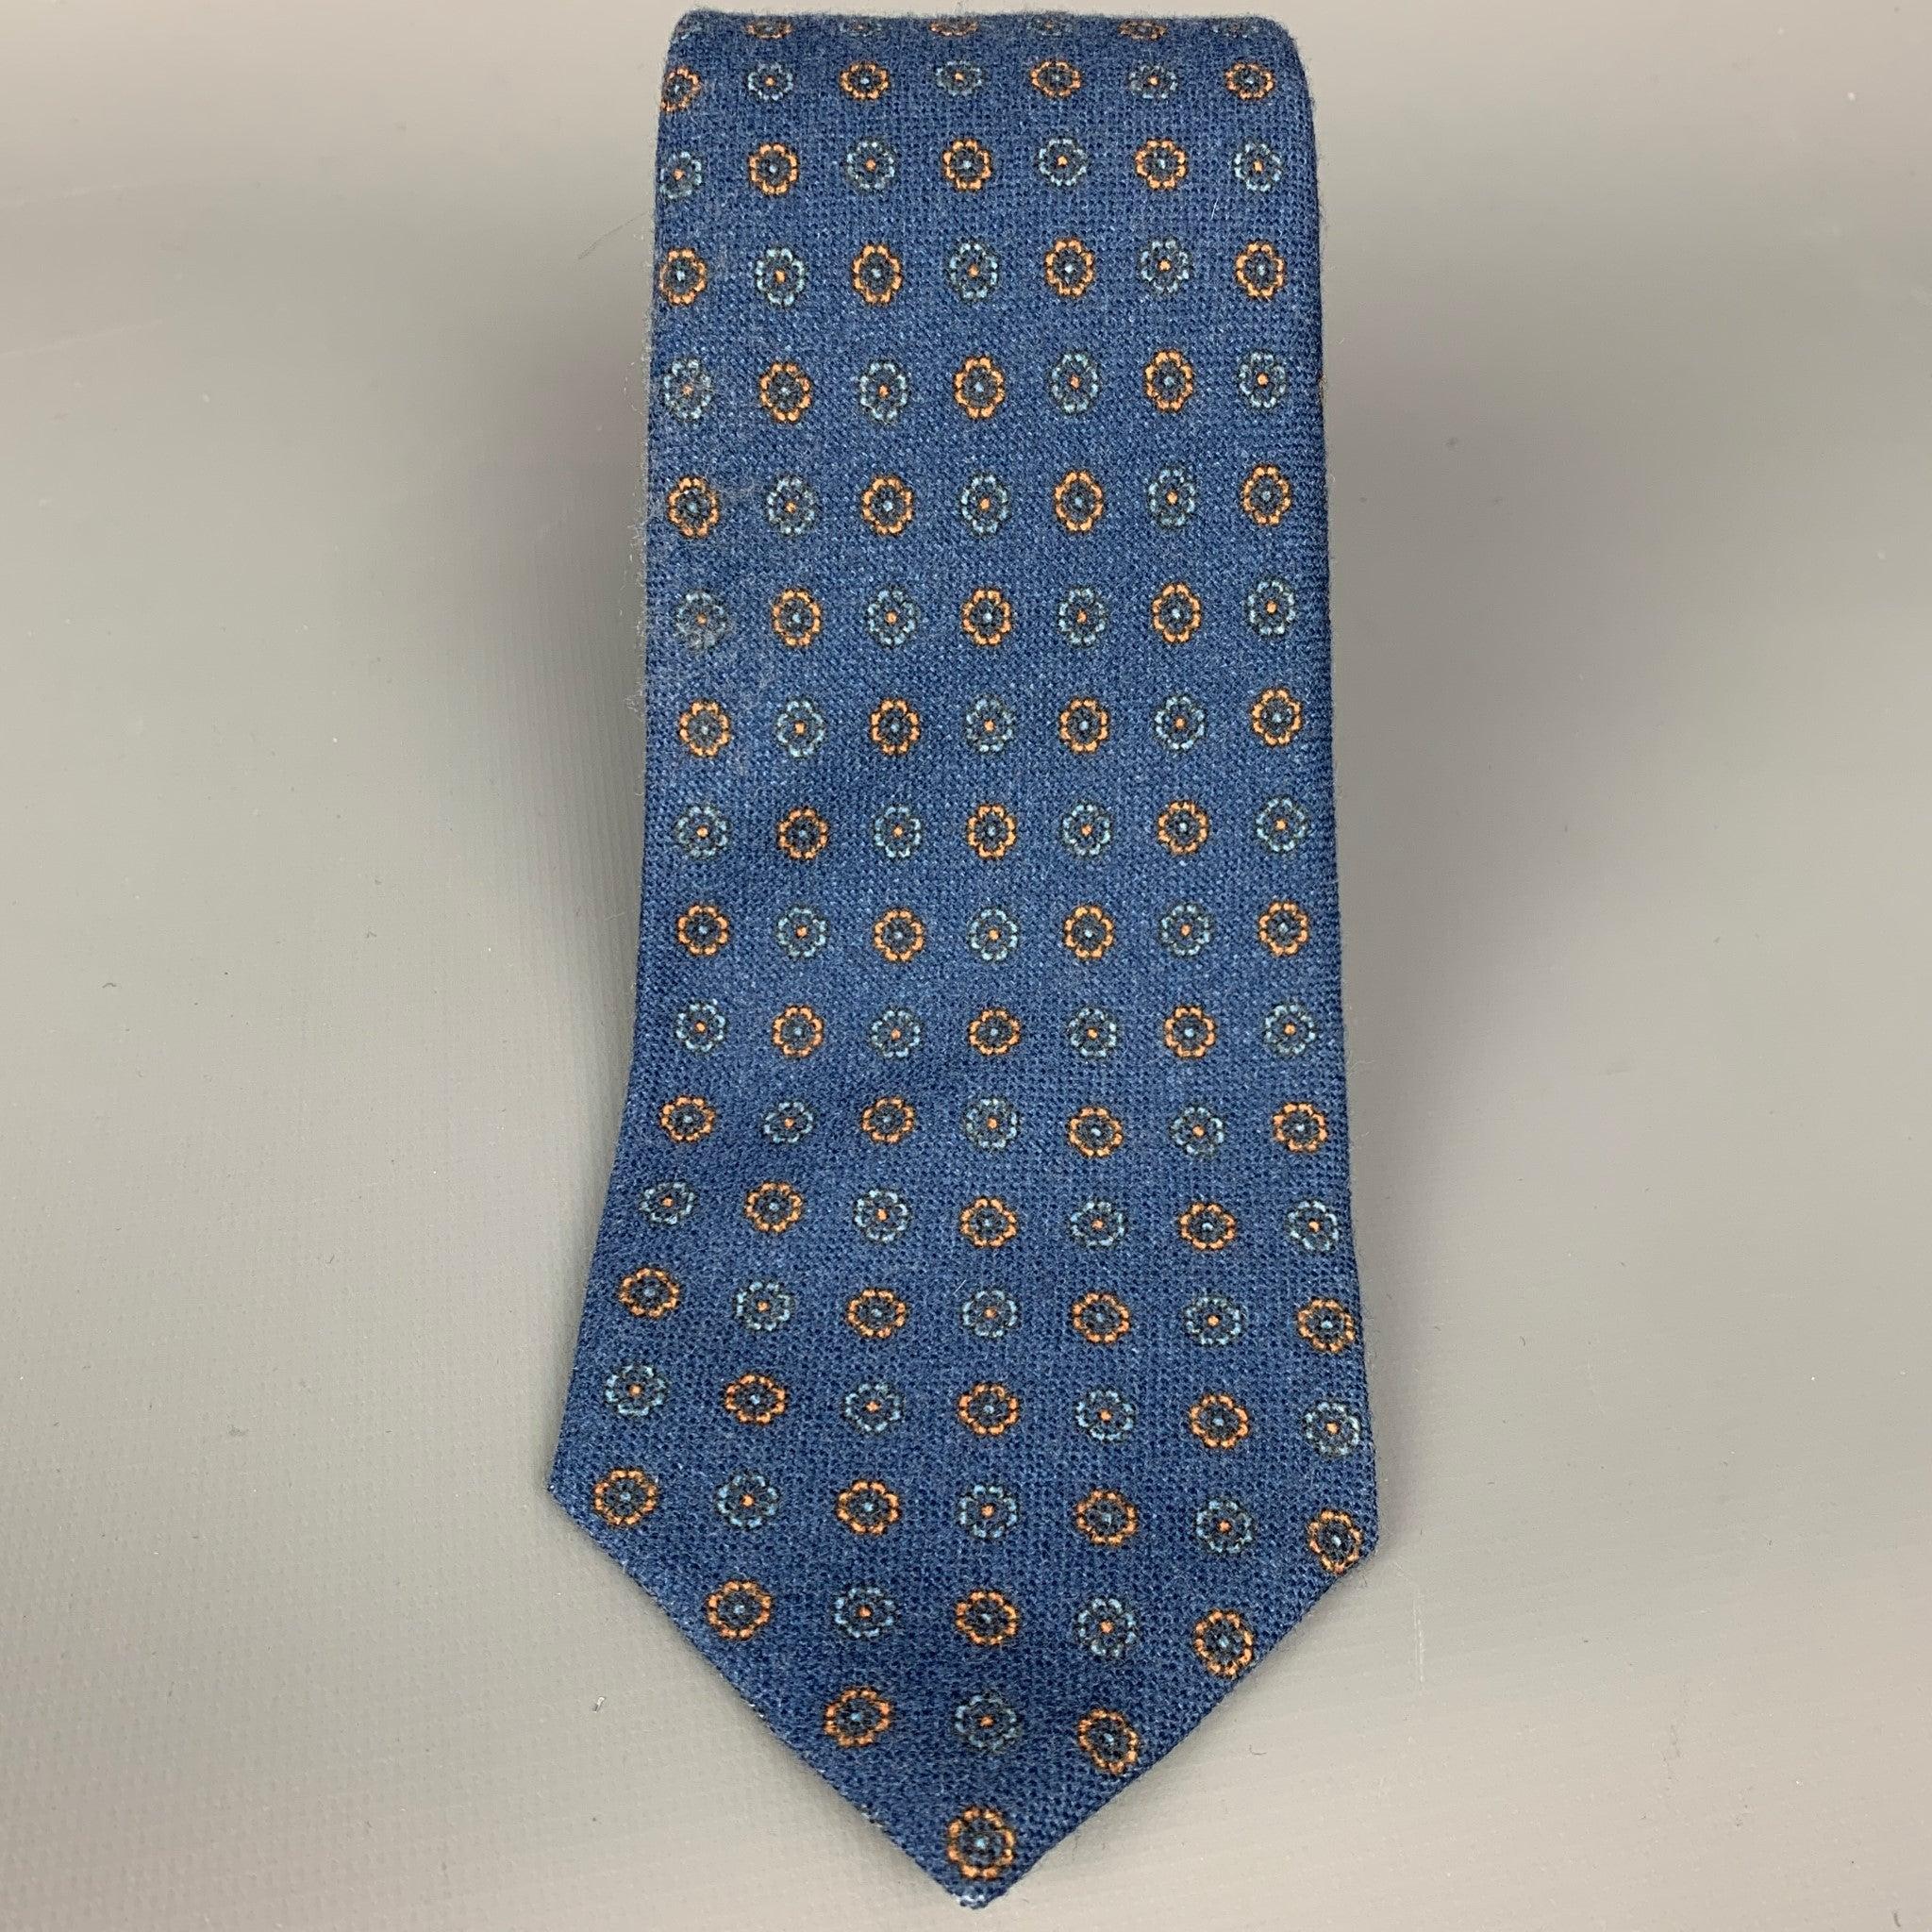 Die Krawatte von ISAIA ist aus blauer und gelber geblümter Wolle. Hergestellt in Italien.
Sehr guter gebrauchter Zustand. 

Abmessungen: 
  Breite: 3,5 Zoll 
  
  
 
Sui Generis-Referenz: 108428
Kategorie: Krawatte
Mehr Details
    
Marke: 